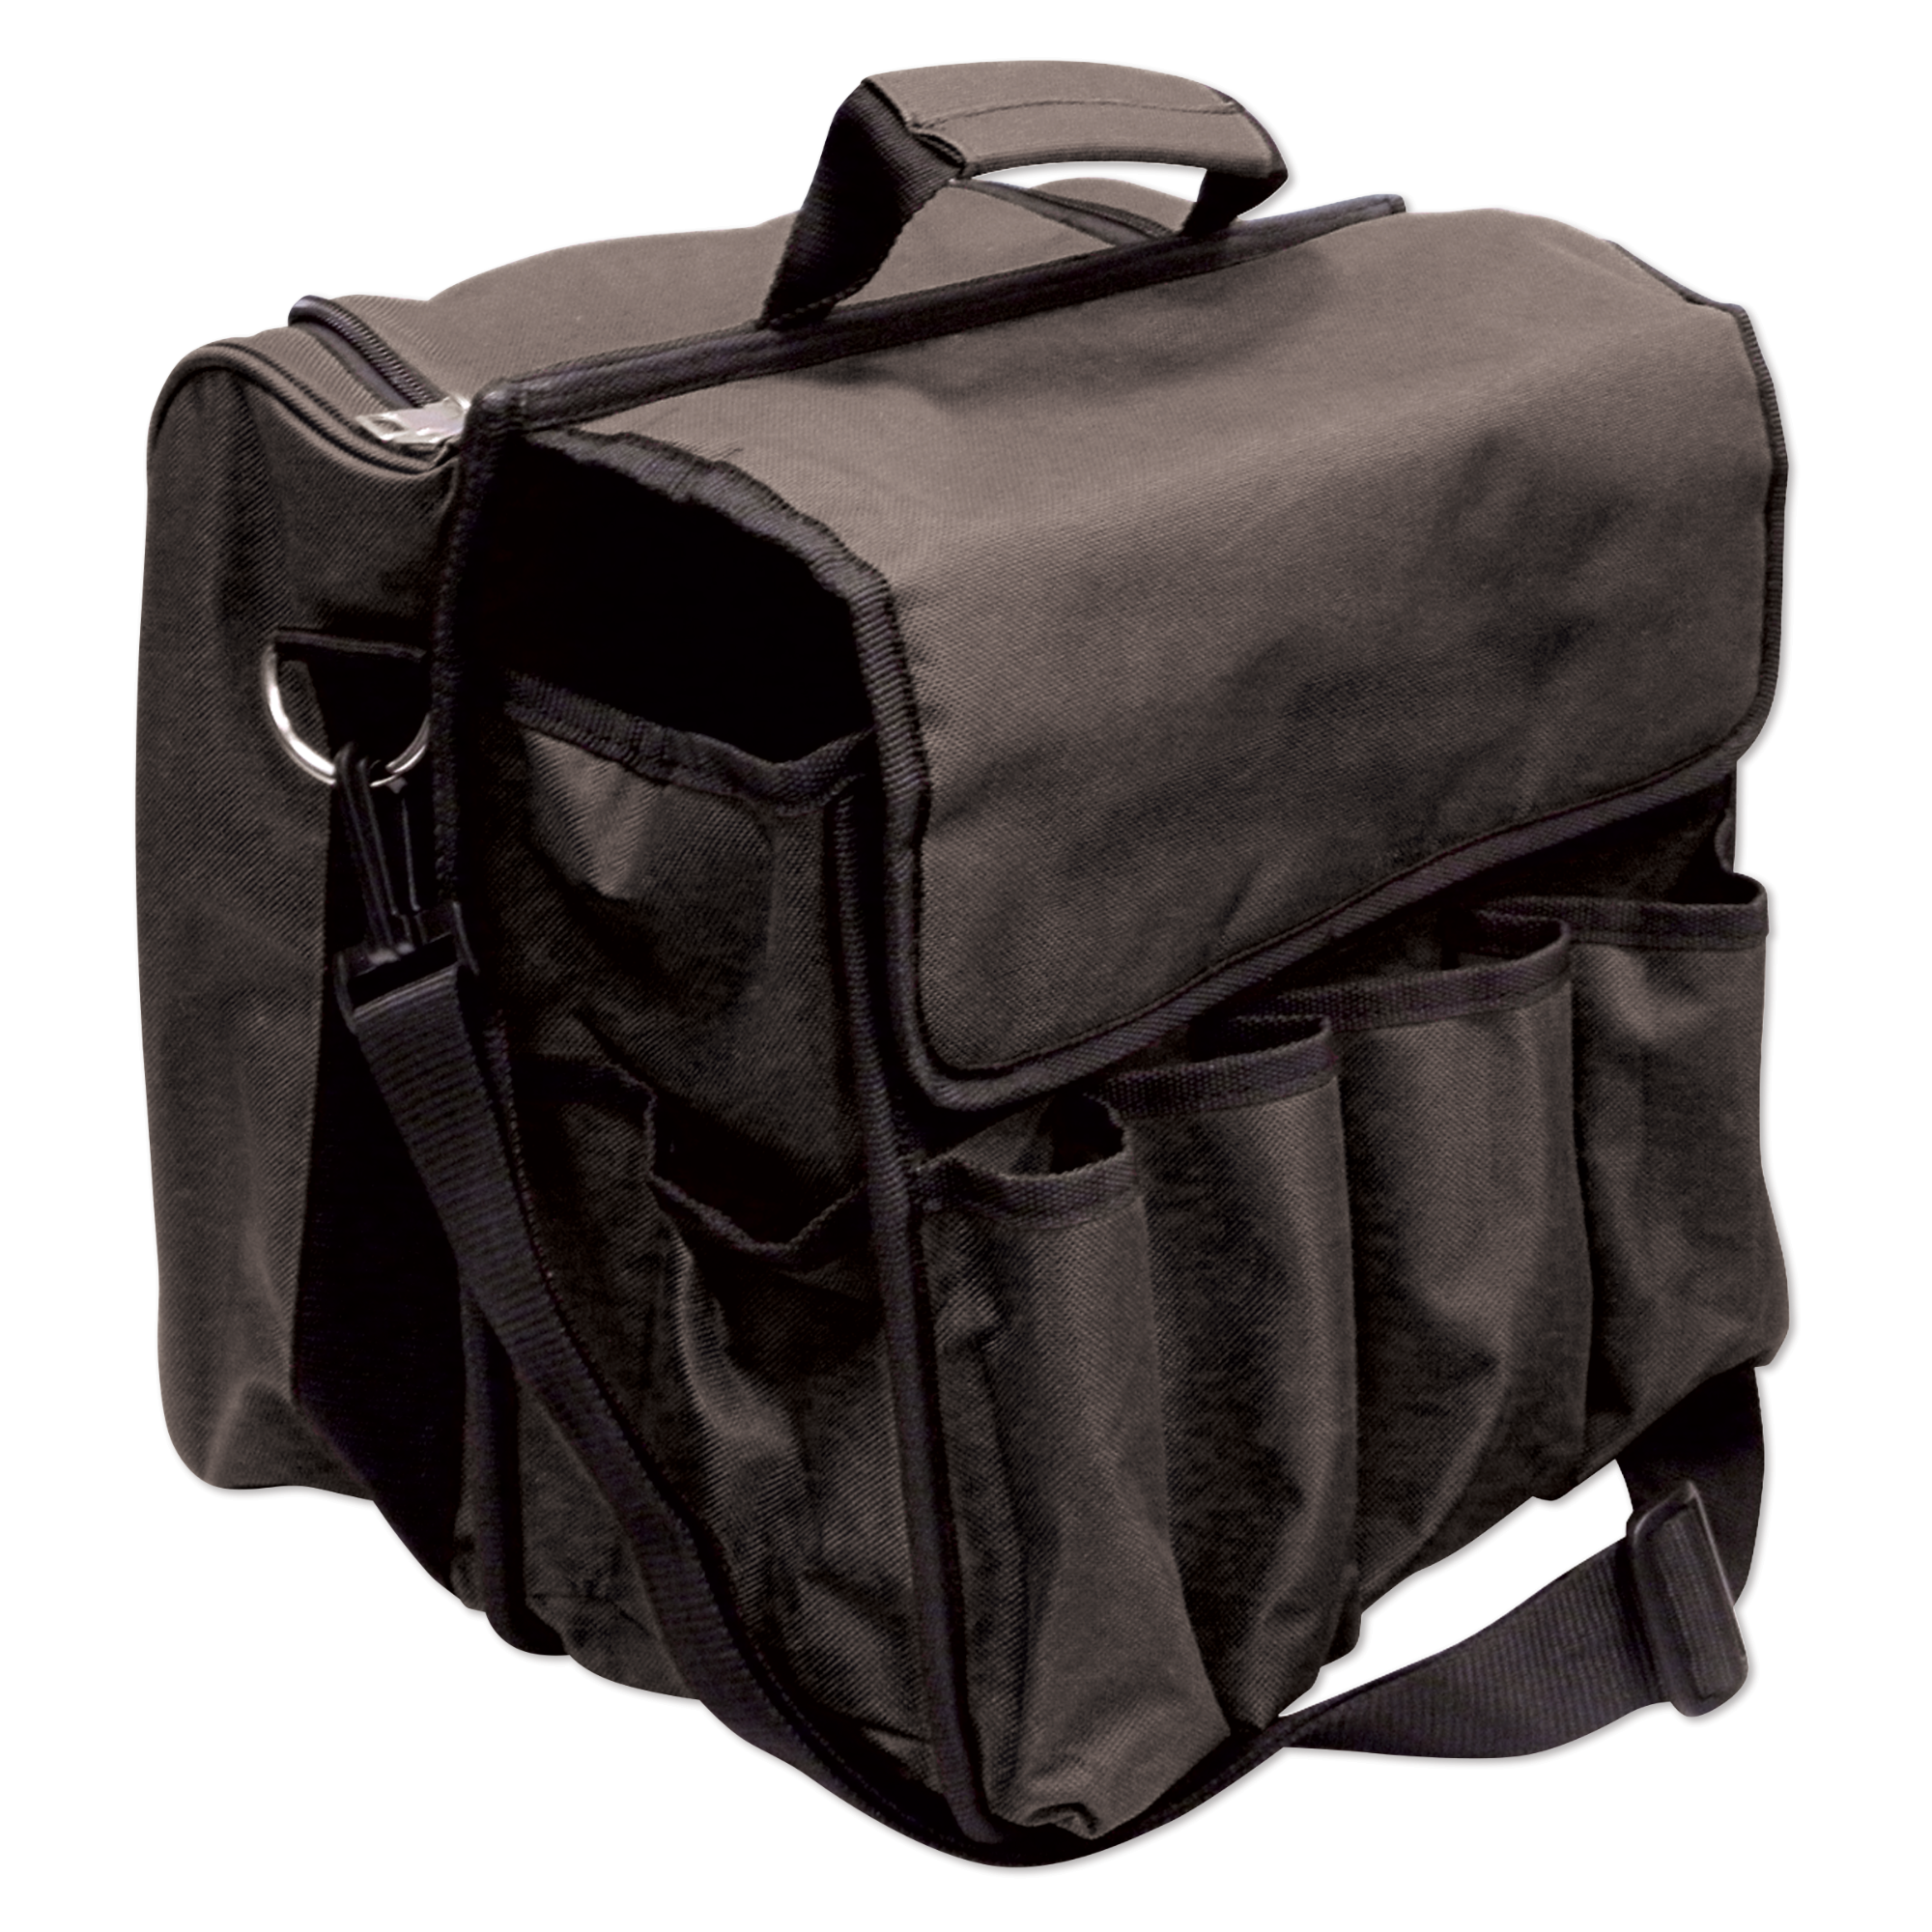 Studiopro Multi-Compartment Tool Bag